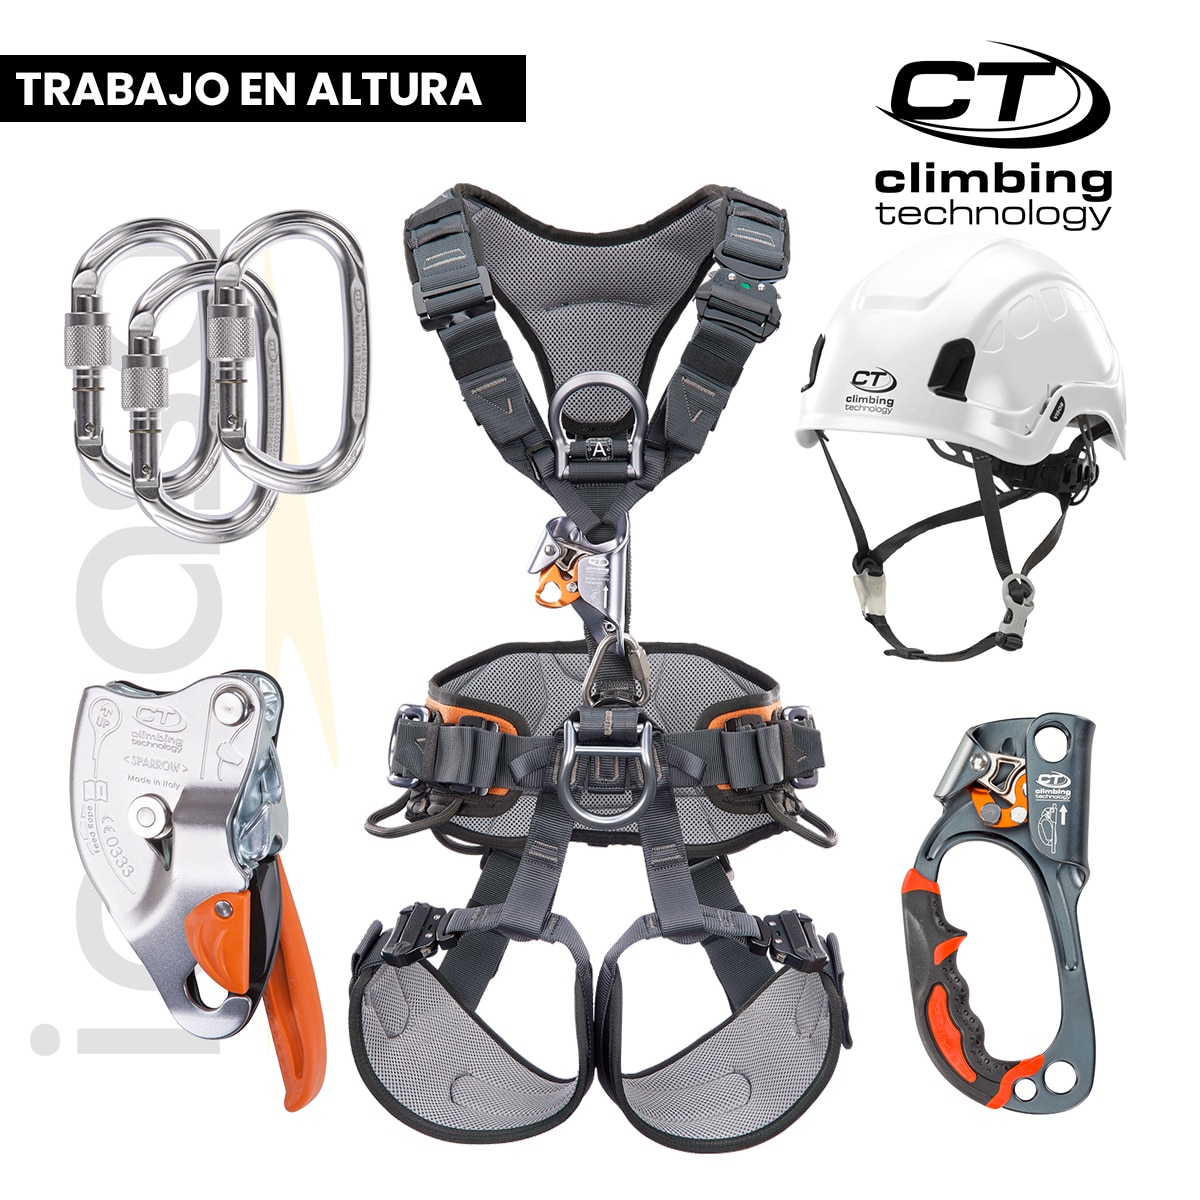 EQUIPO PARA TRABAJO EN ALTURA- Climbing Technology